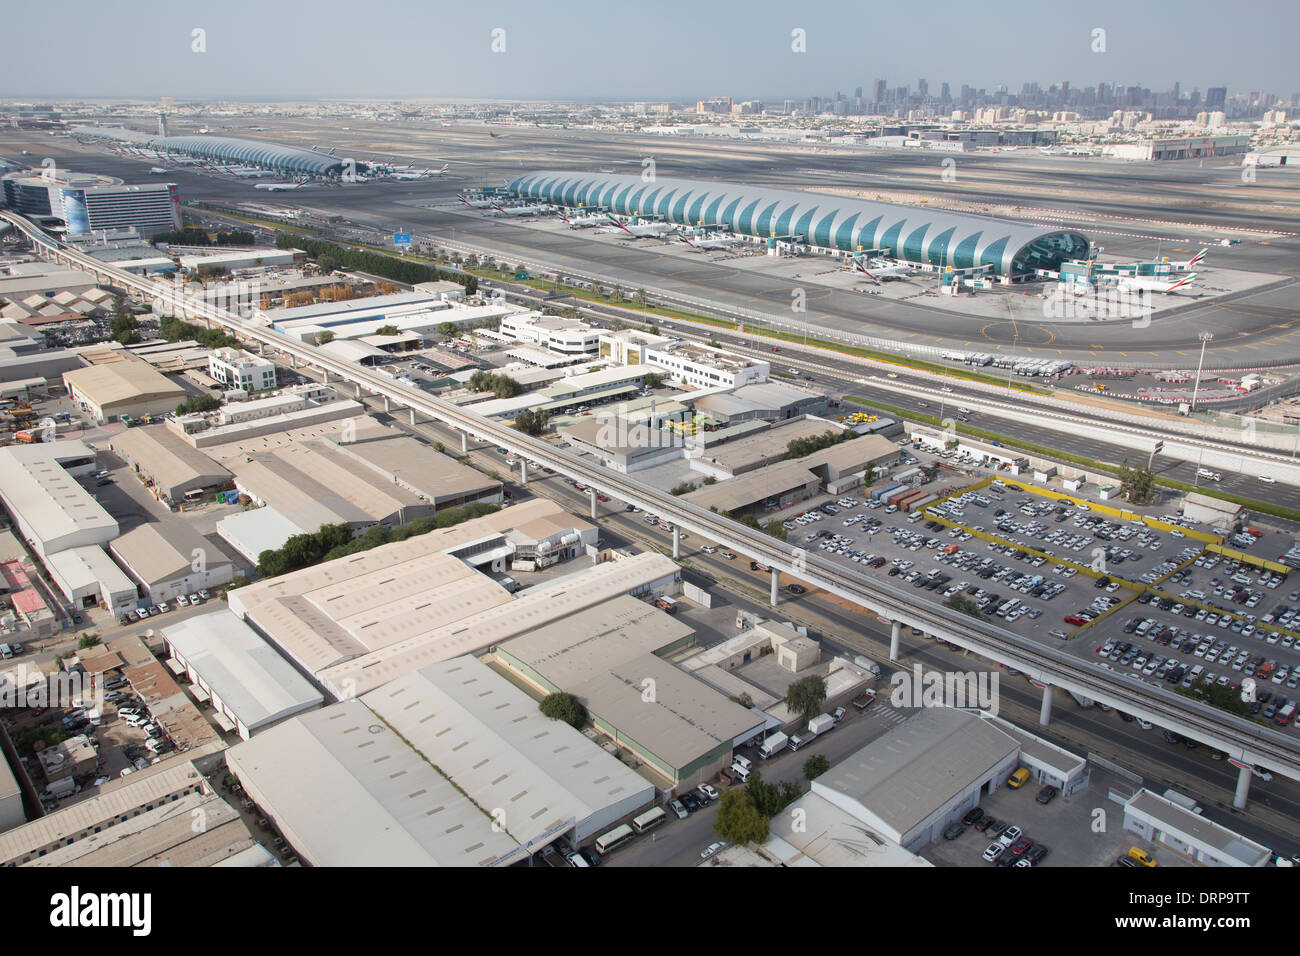 Foto aerea di Dubai negli Emirati Arabi Uniti. Aeroporto Internazionale di Dubai Foto Stock